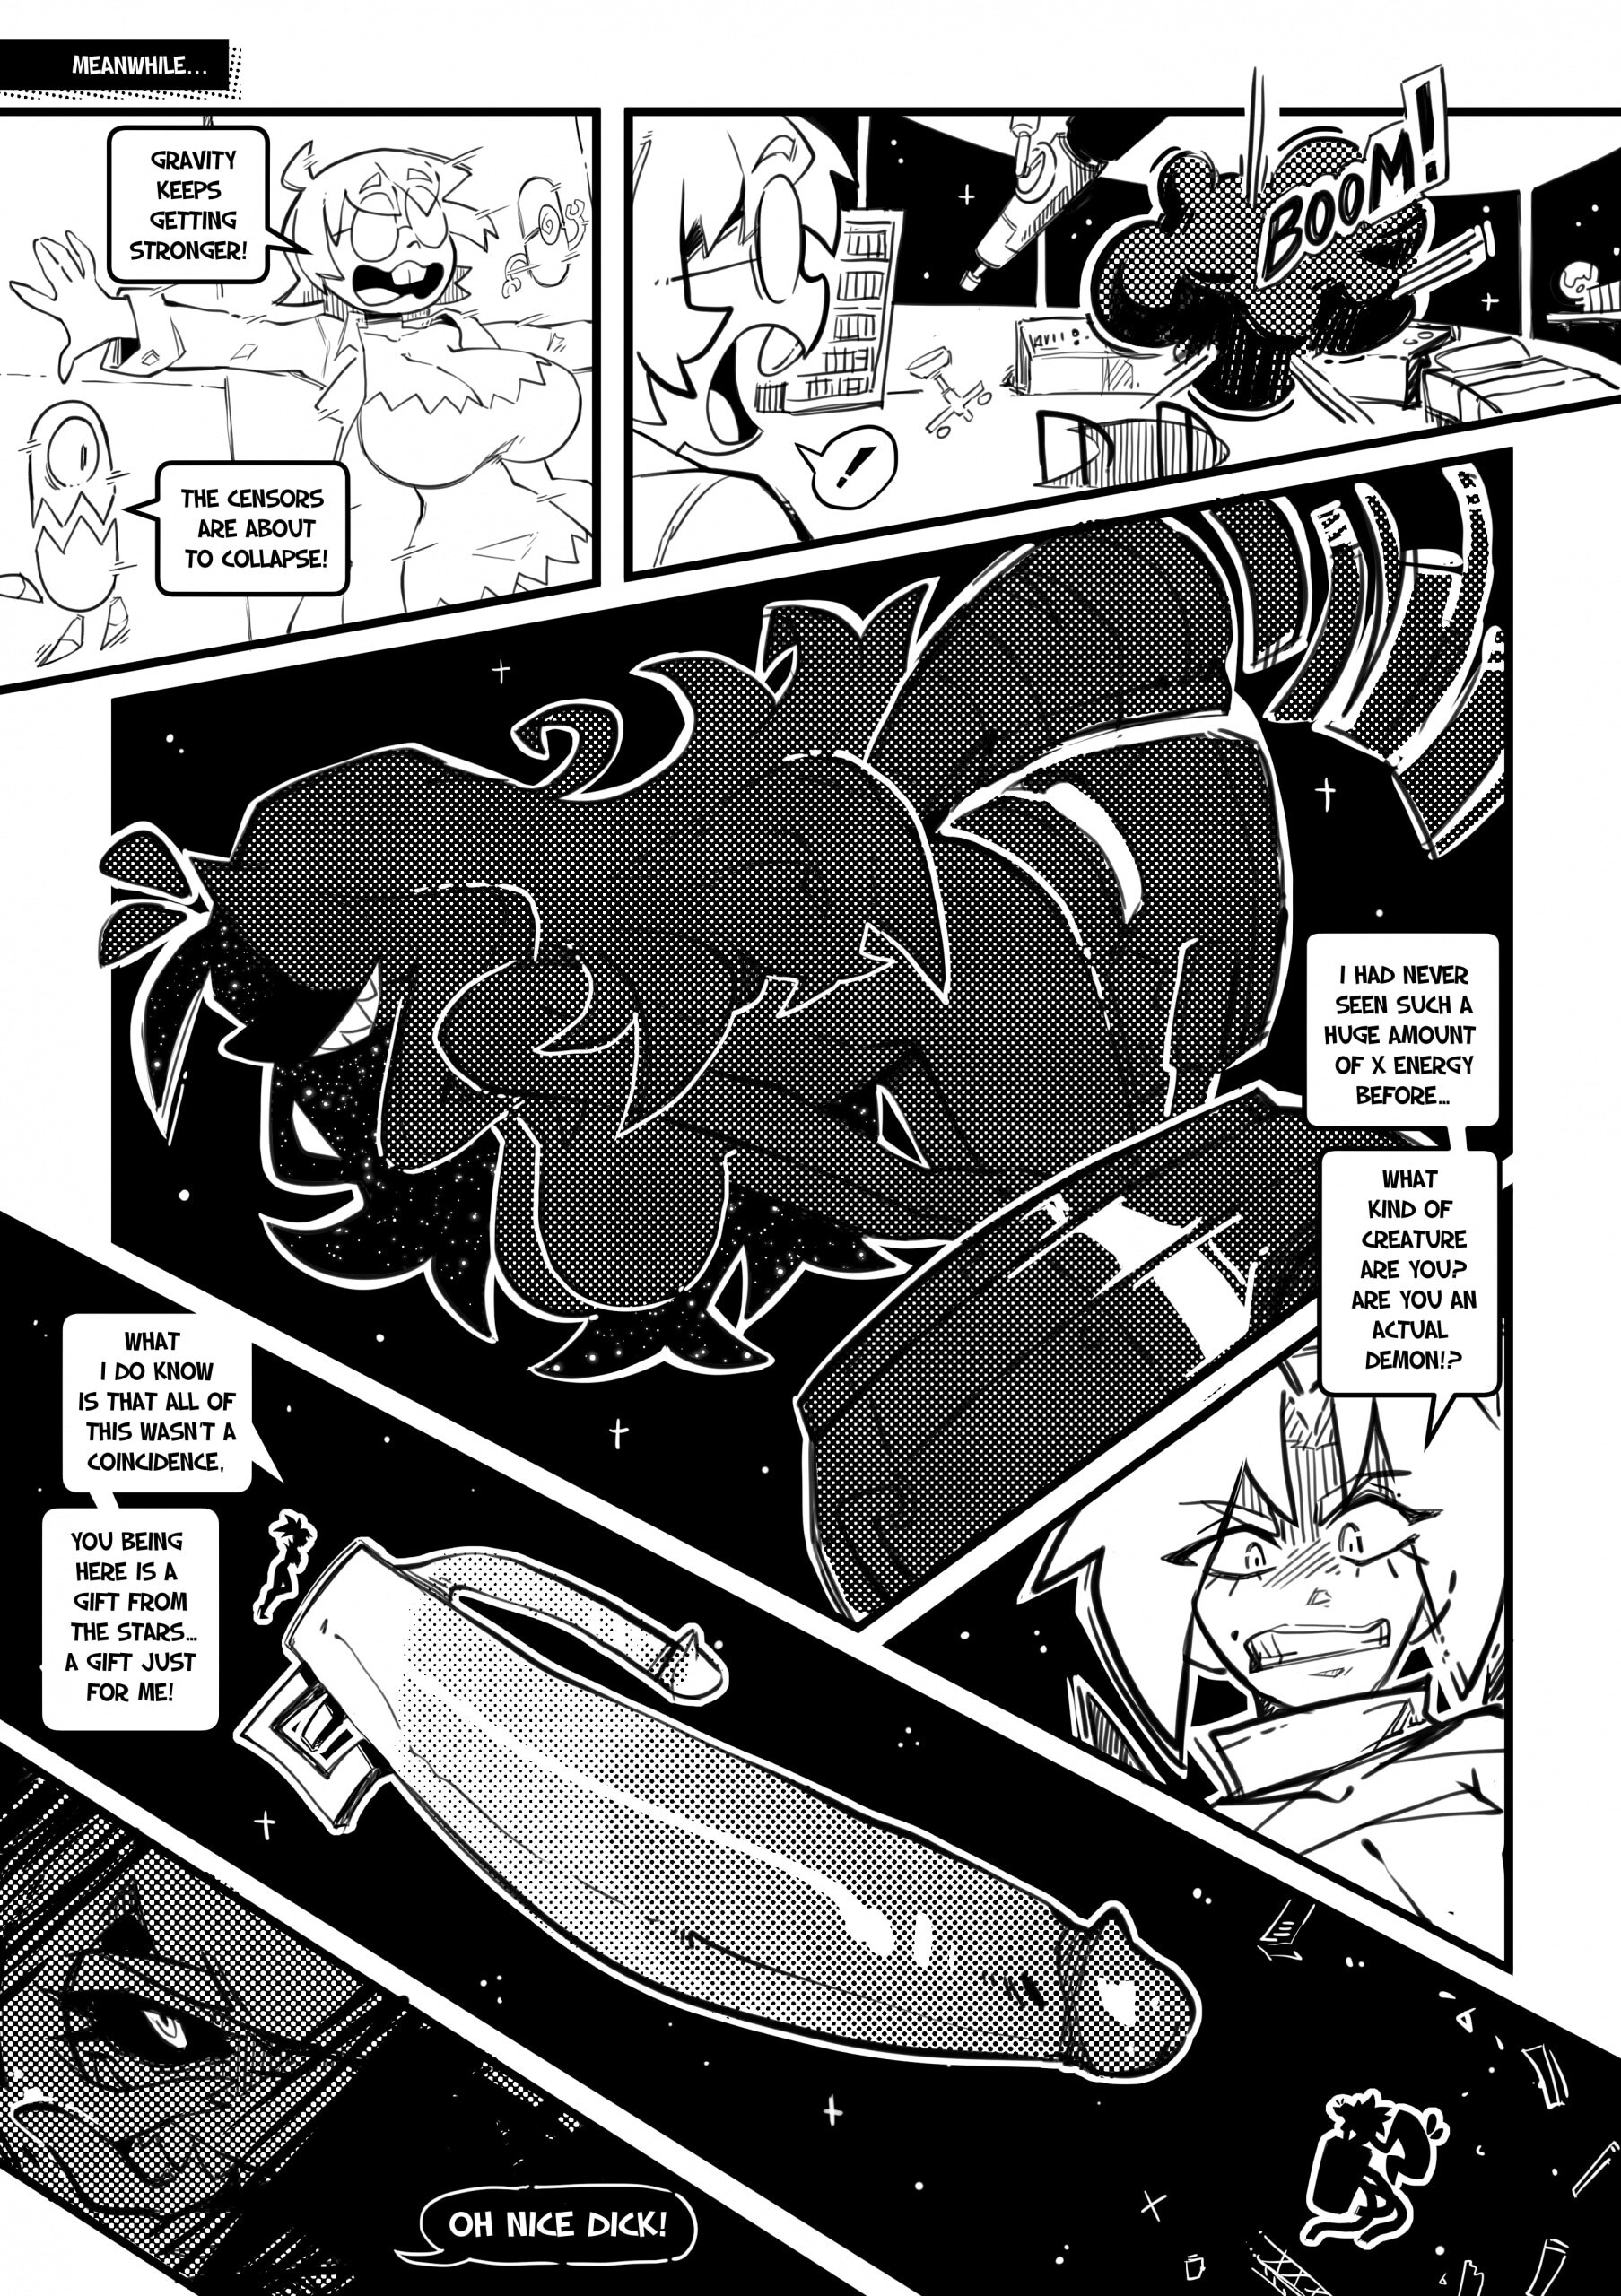 Skarpworld 10: Milk Crisis 4 - Gravity - Page 25